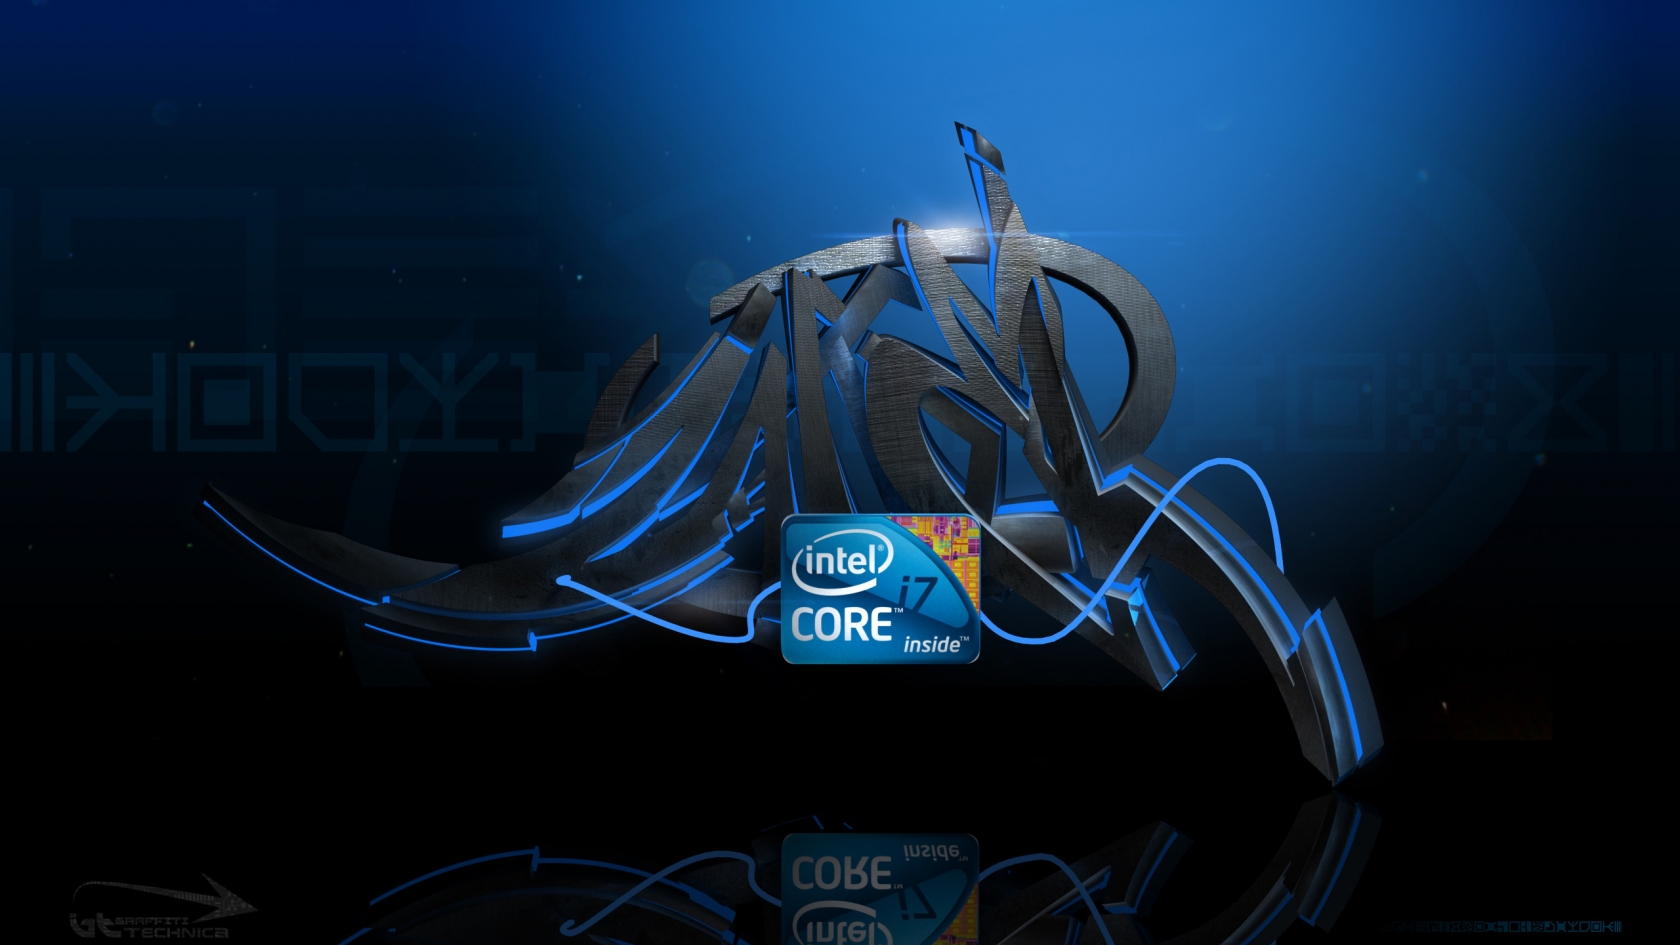 Intel i7 Graffiti for 1680 x 945 HDTV resolution